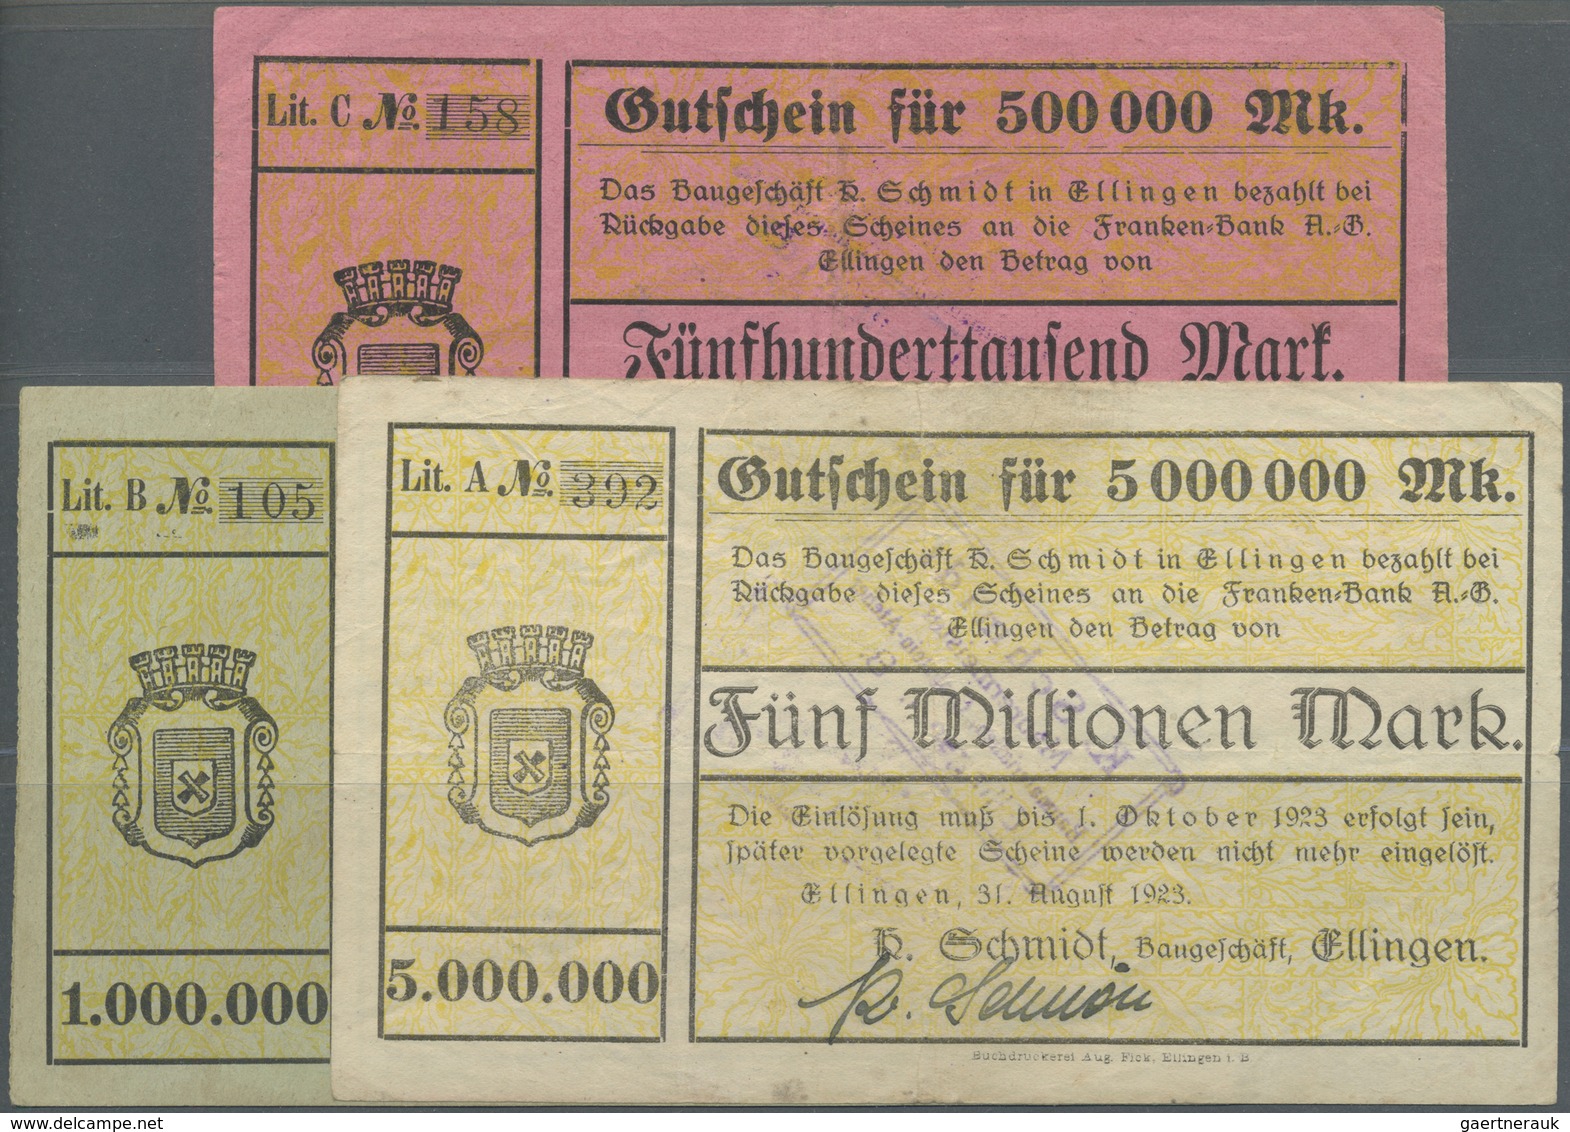 Deutschland - Notgeld - Bayern: Ellingen, Baugeschäft Konrad Schmidt, 500 Tsd., 1, 5 Mio. Mark, 31.8 - [11] Local Banknote Issues